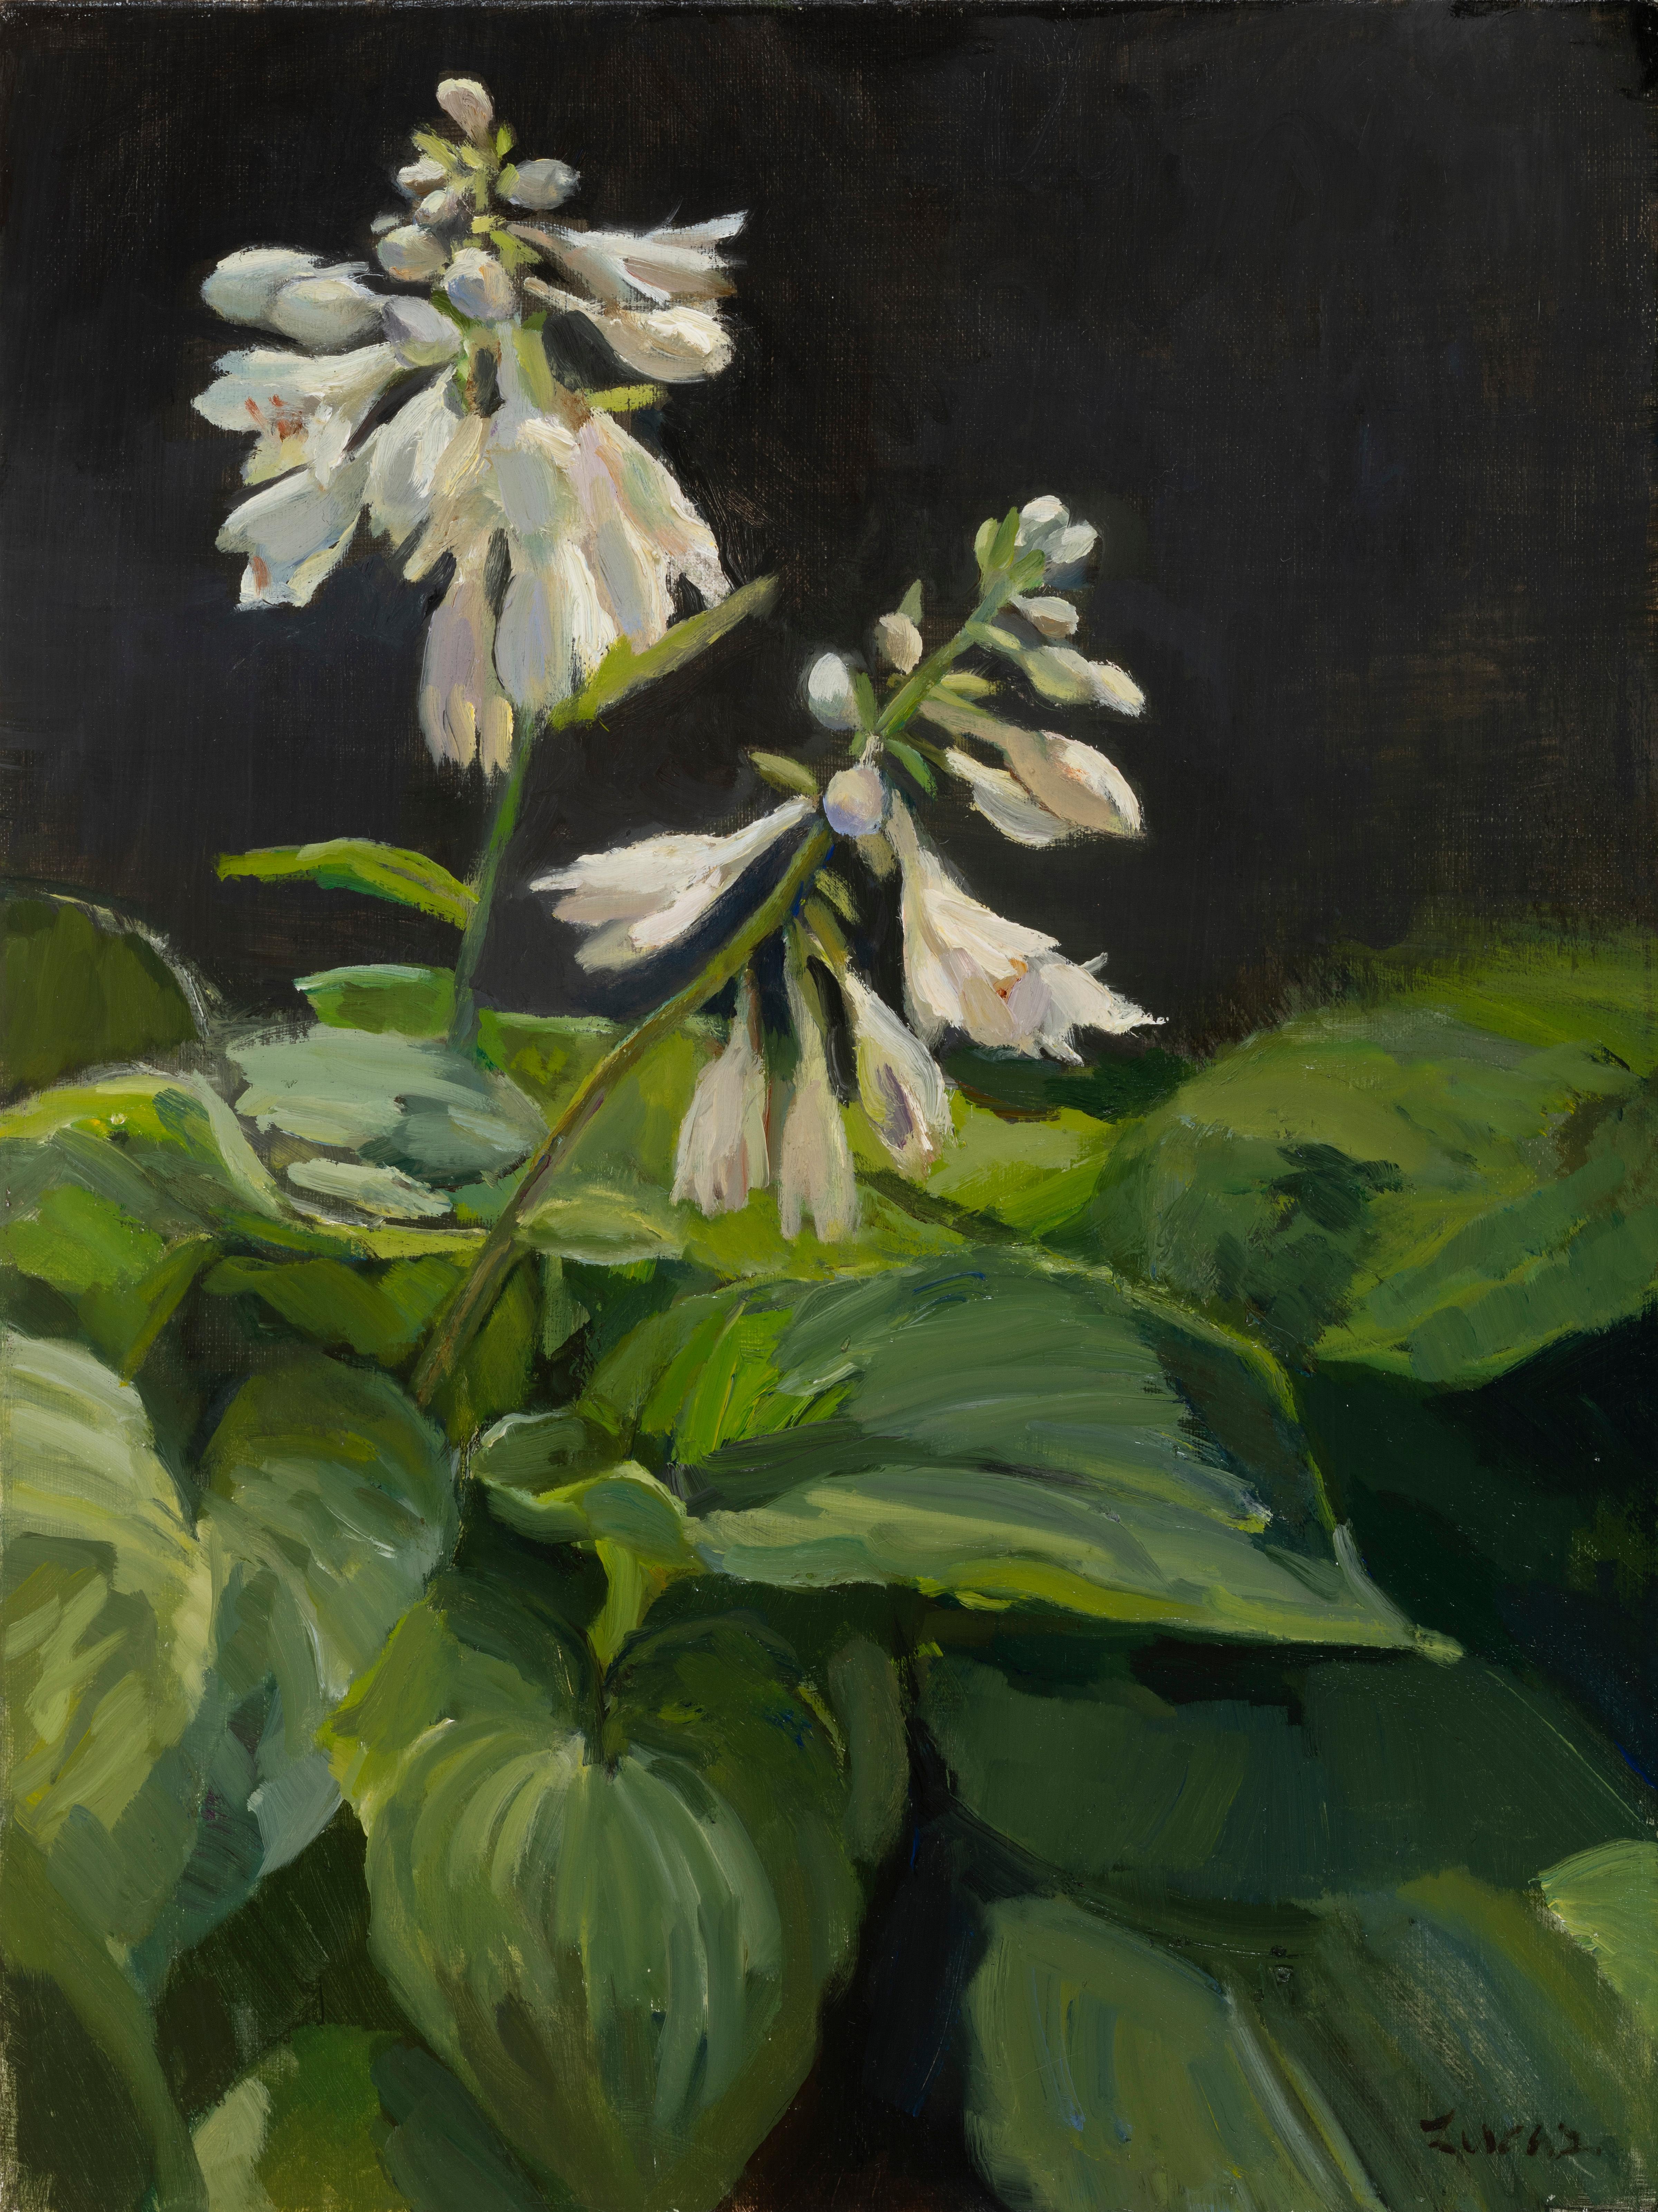 Interior Painting Maryann Lucas - "Glow Up" contemporain réaliste fleurs blanches et feuilles vertes sur fond noir.